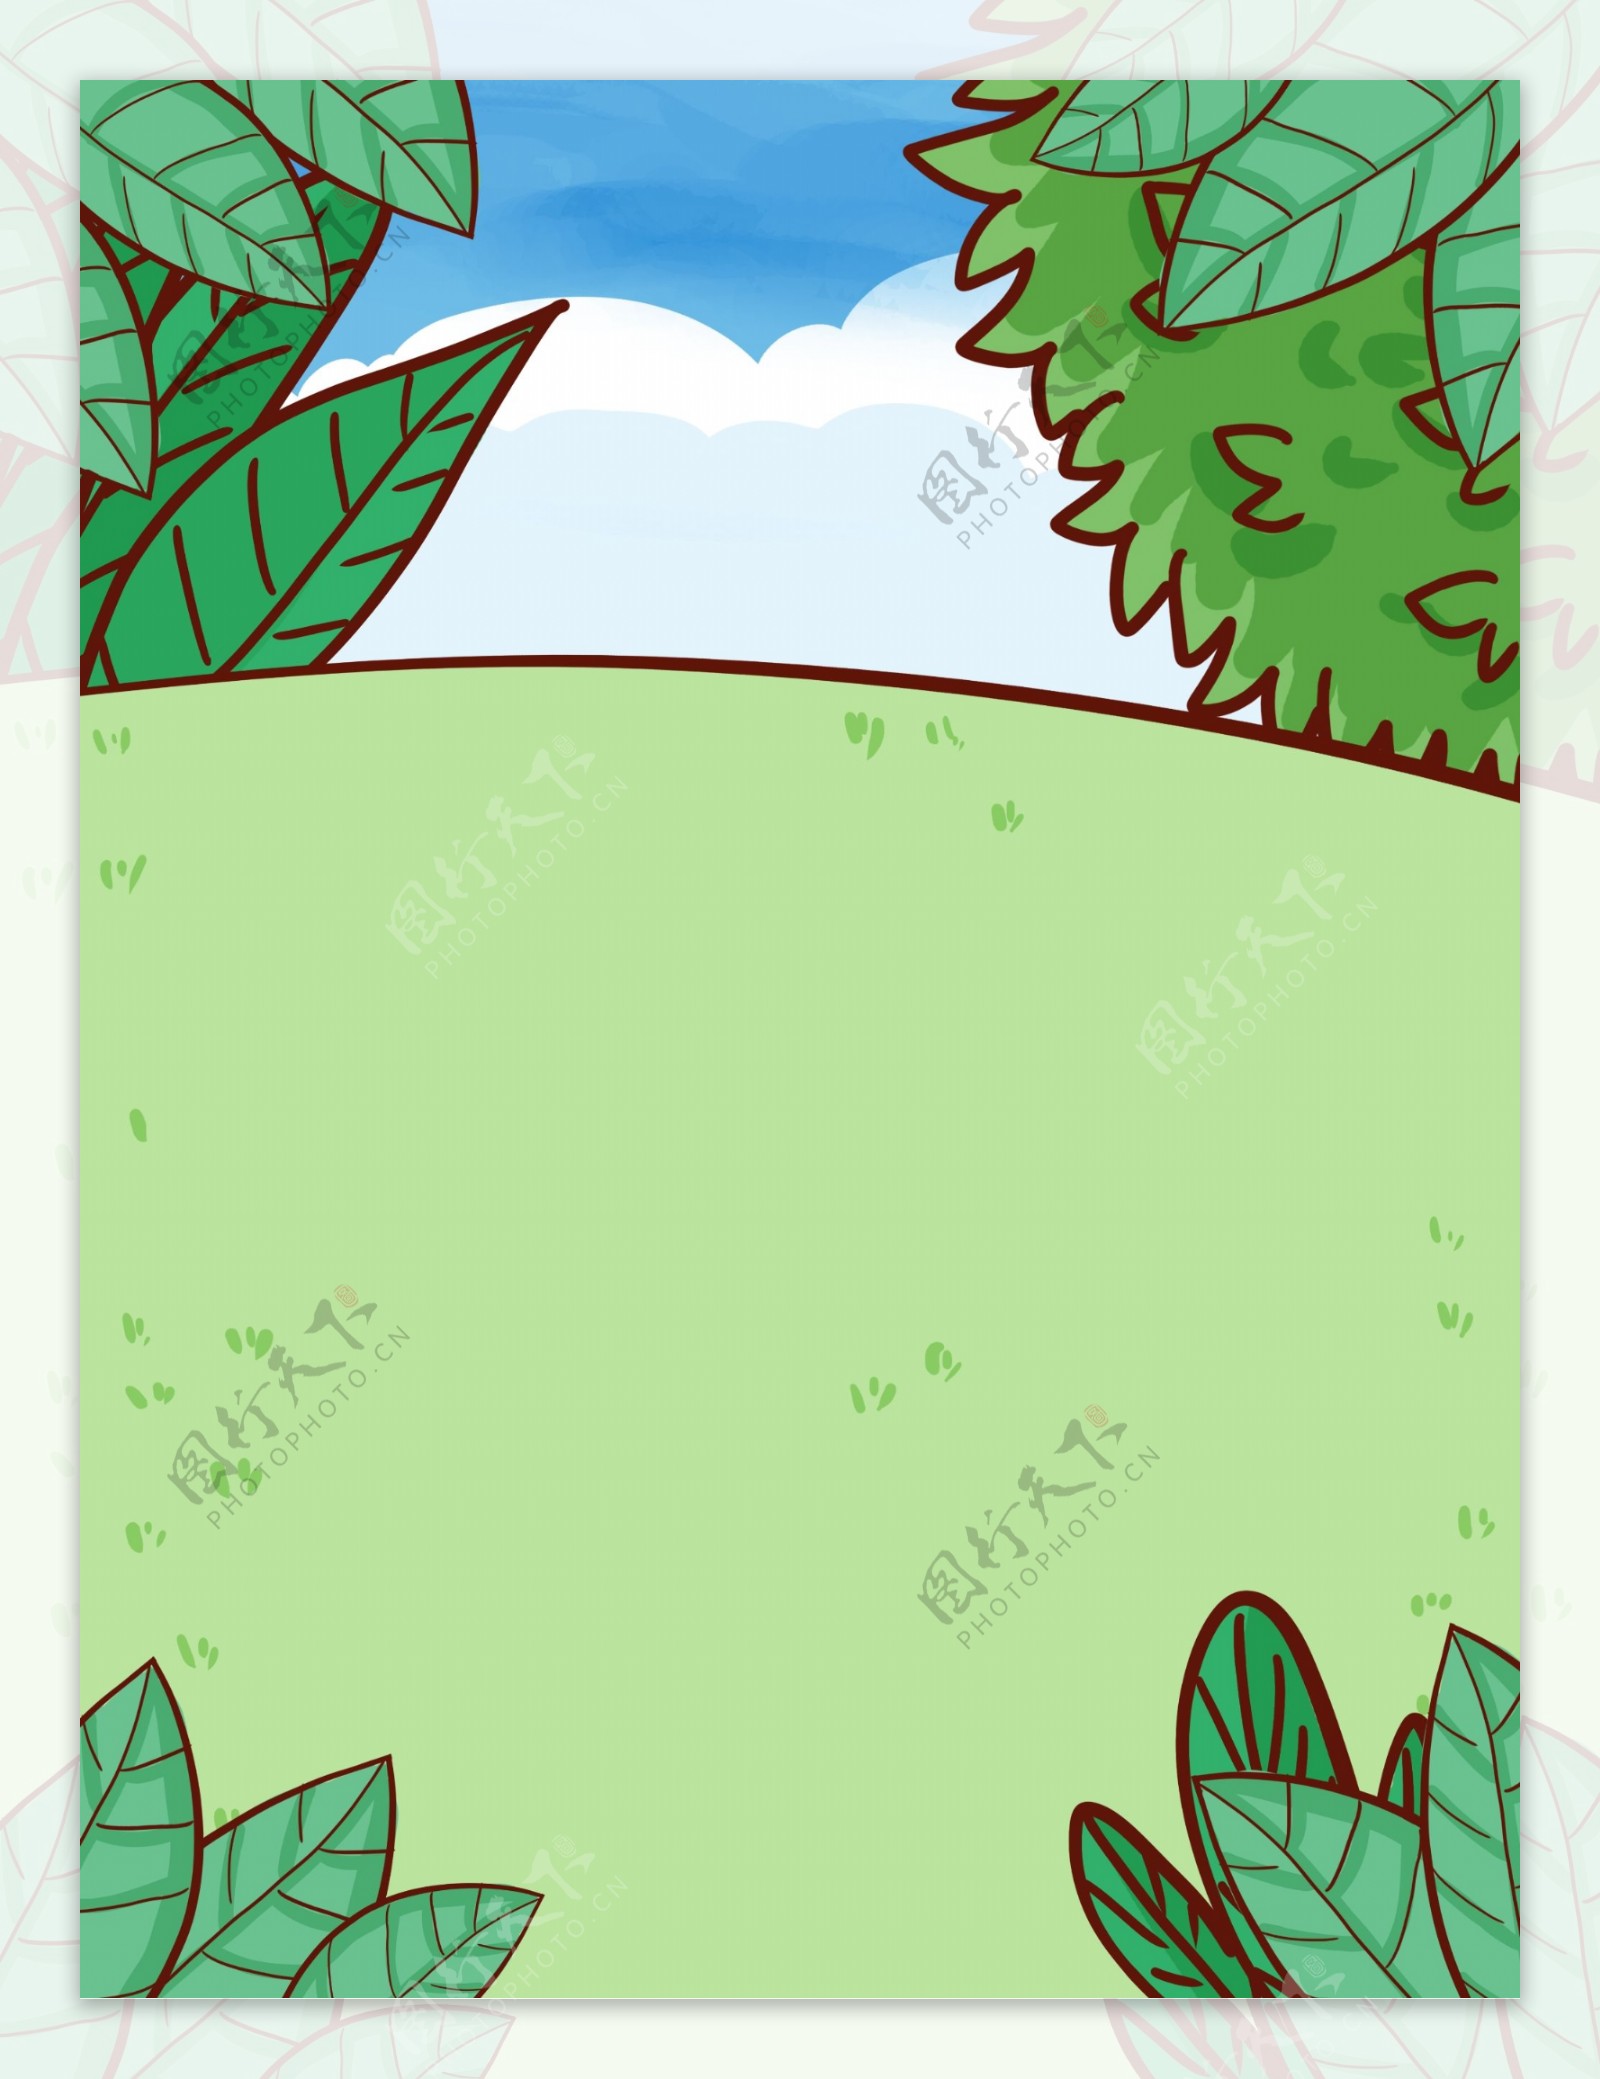 卡通手绘绿色植物风景手绘背景